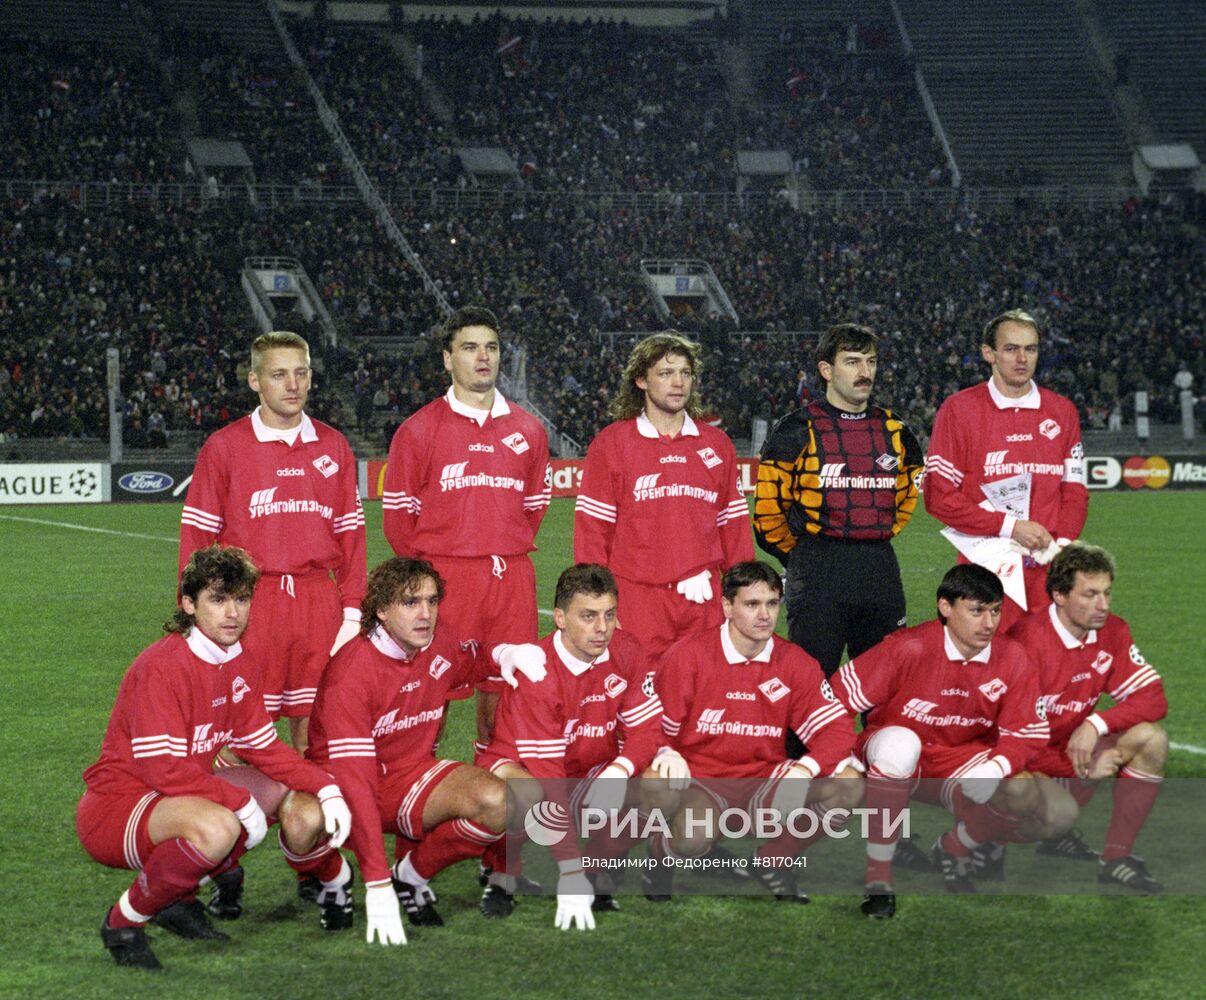 Лига чемпионов 95/96